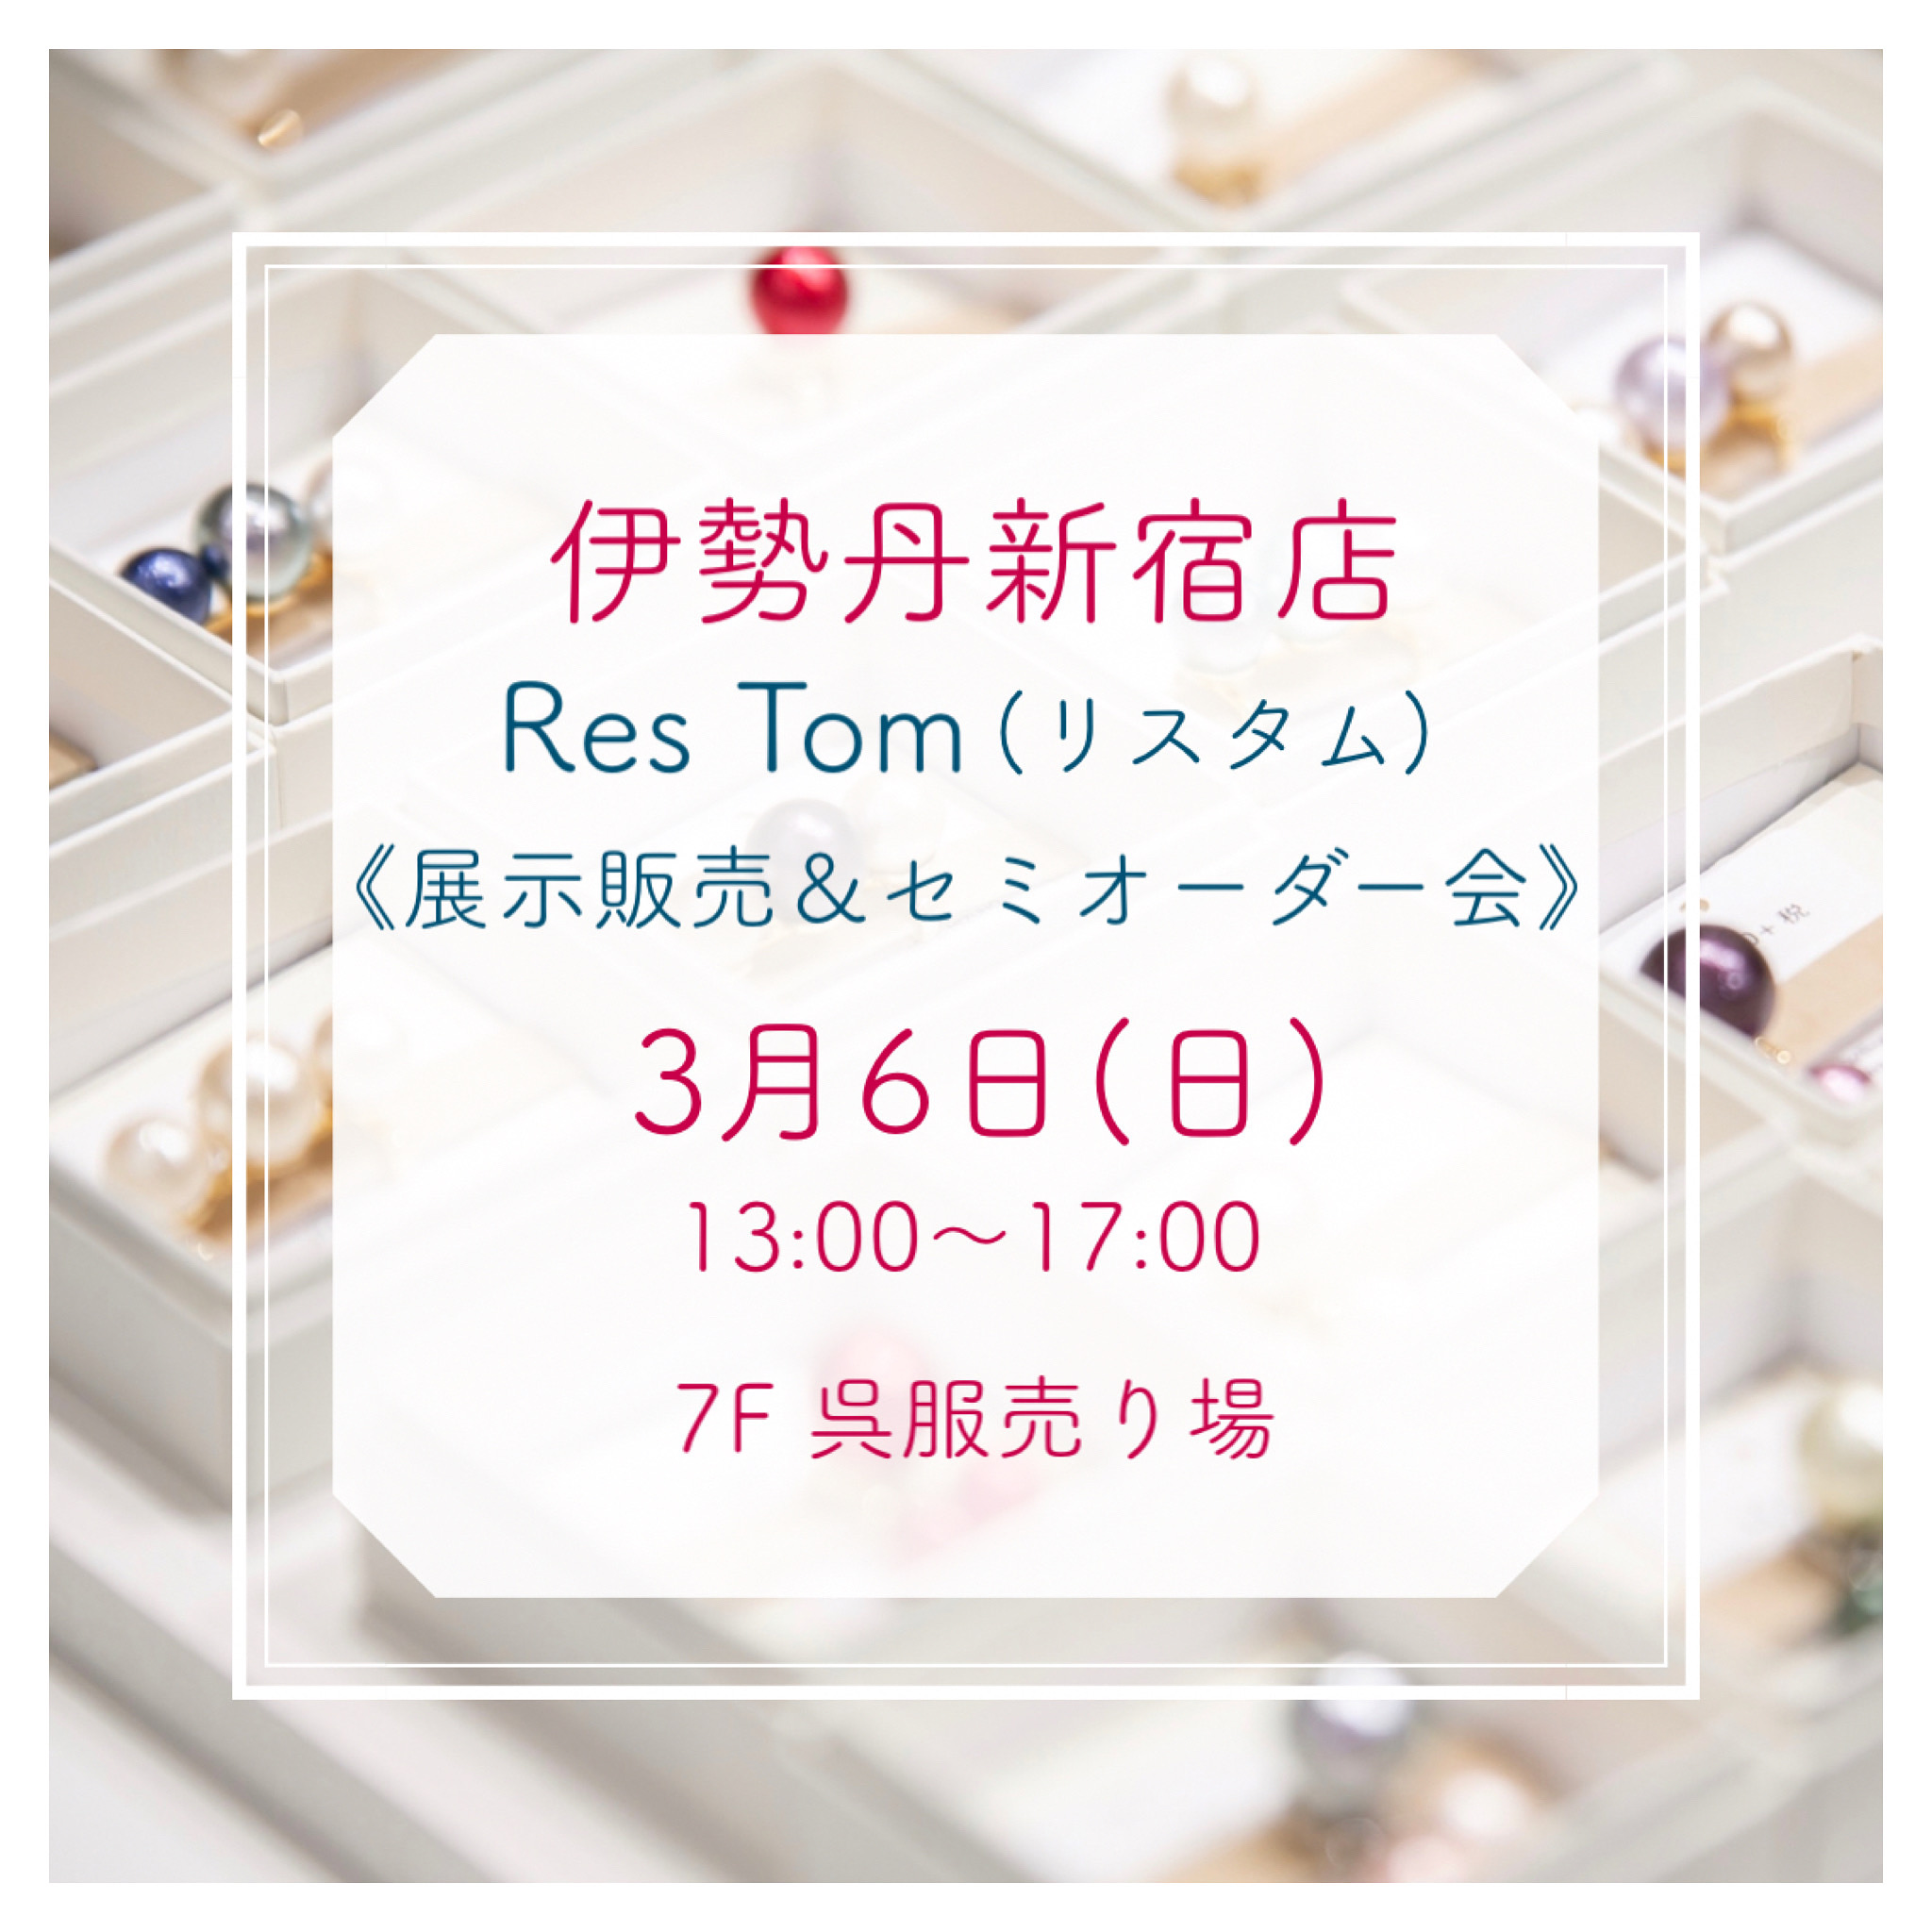 3/6(日)13:00〜17:00 伊勢丹新宿店